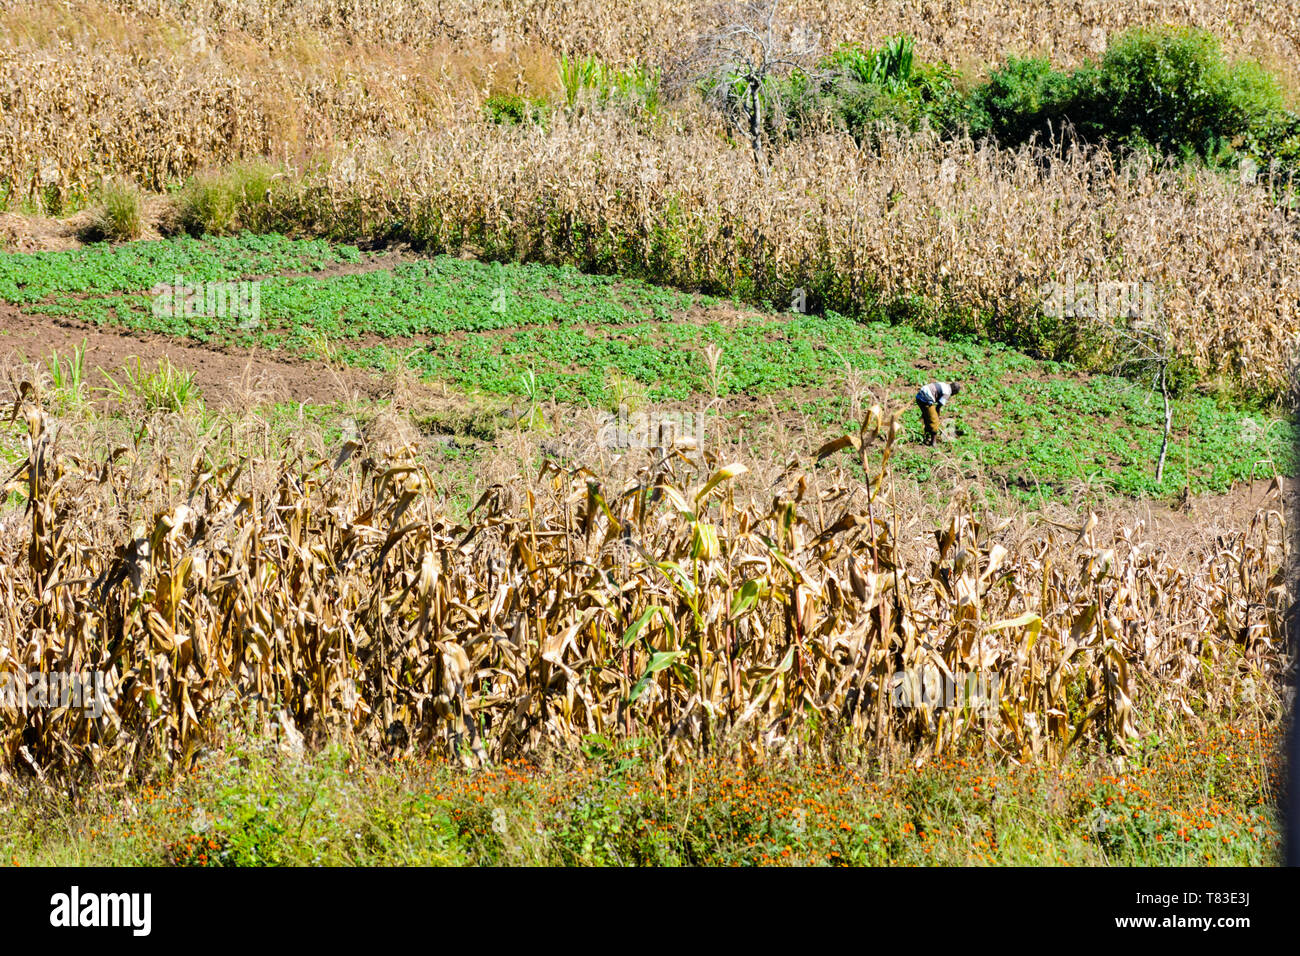 Pequeña figura de un hombre de Malawi trabajando en su campo que se ve verde, rodeado de campos de maíz alto marrón de secado al sol Foto de stock